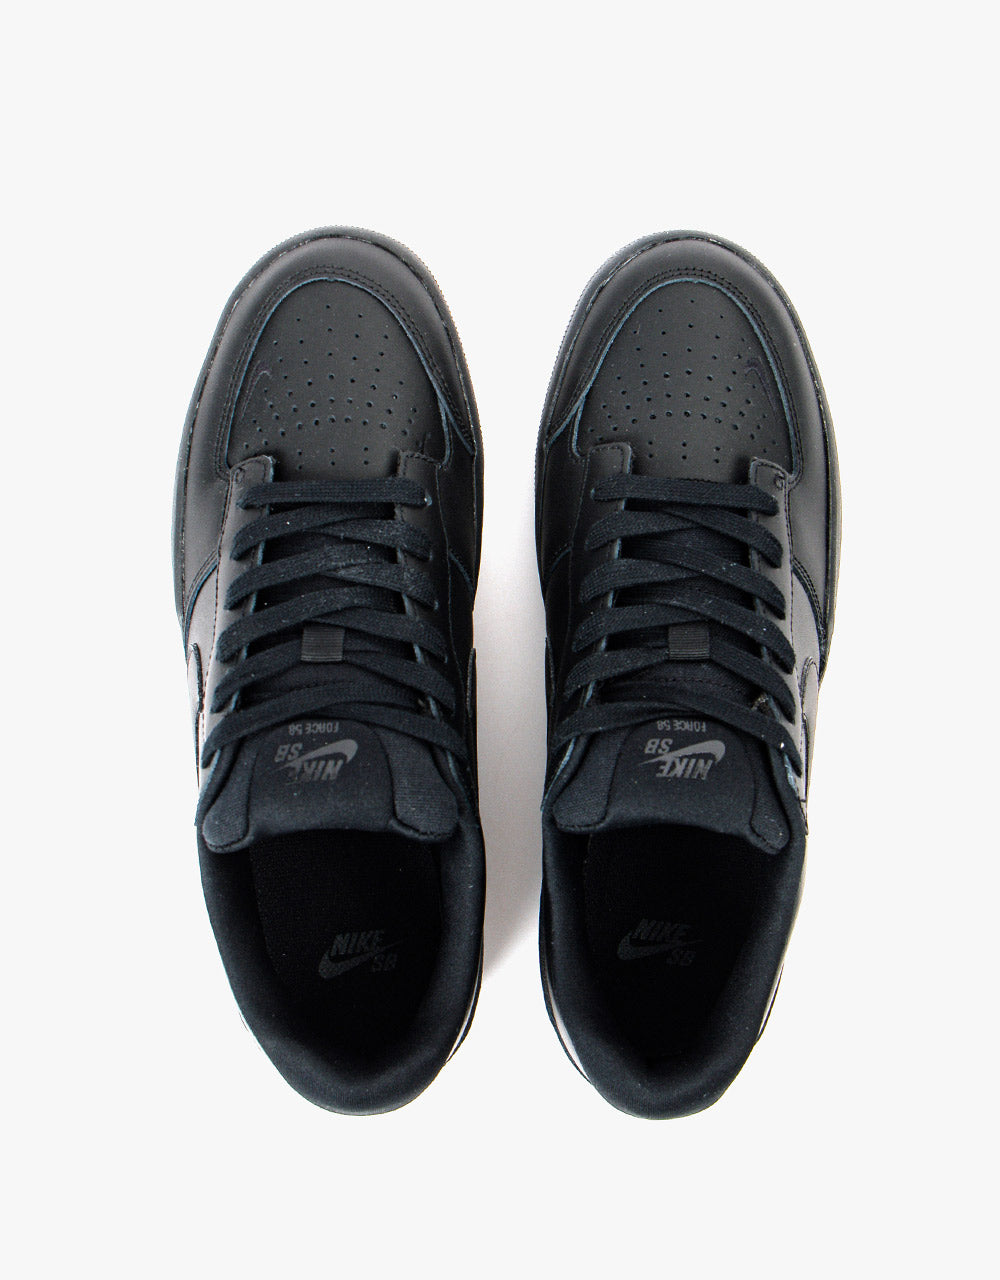 Nike SB Force 58 Premium Leather Skate Shoes - Black/Black-Black-Black